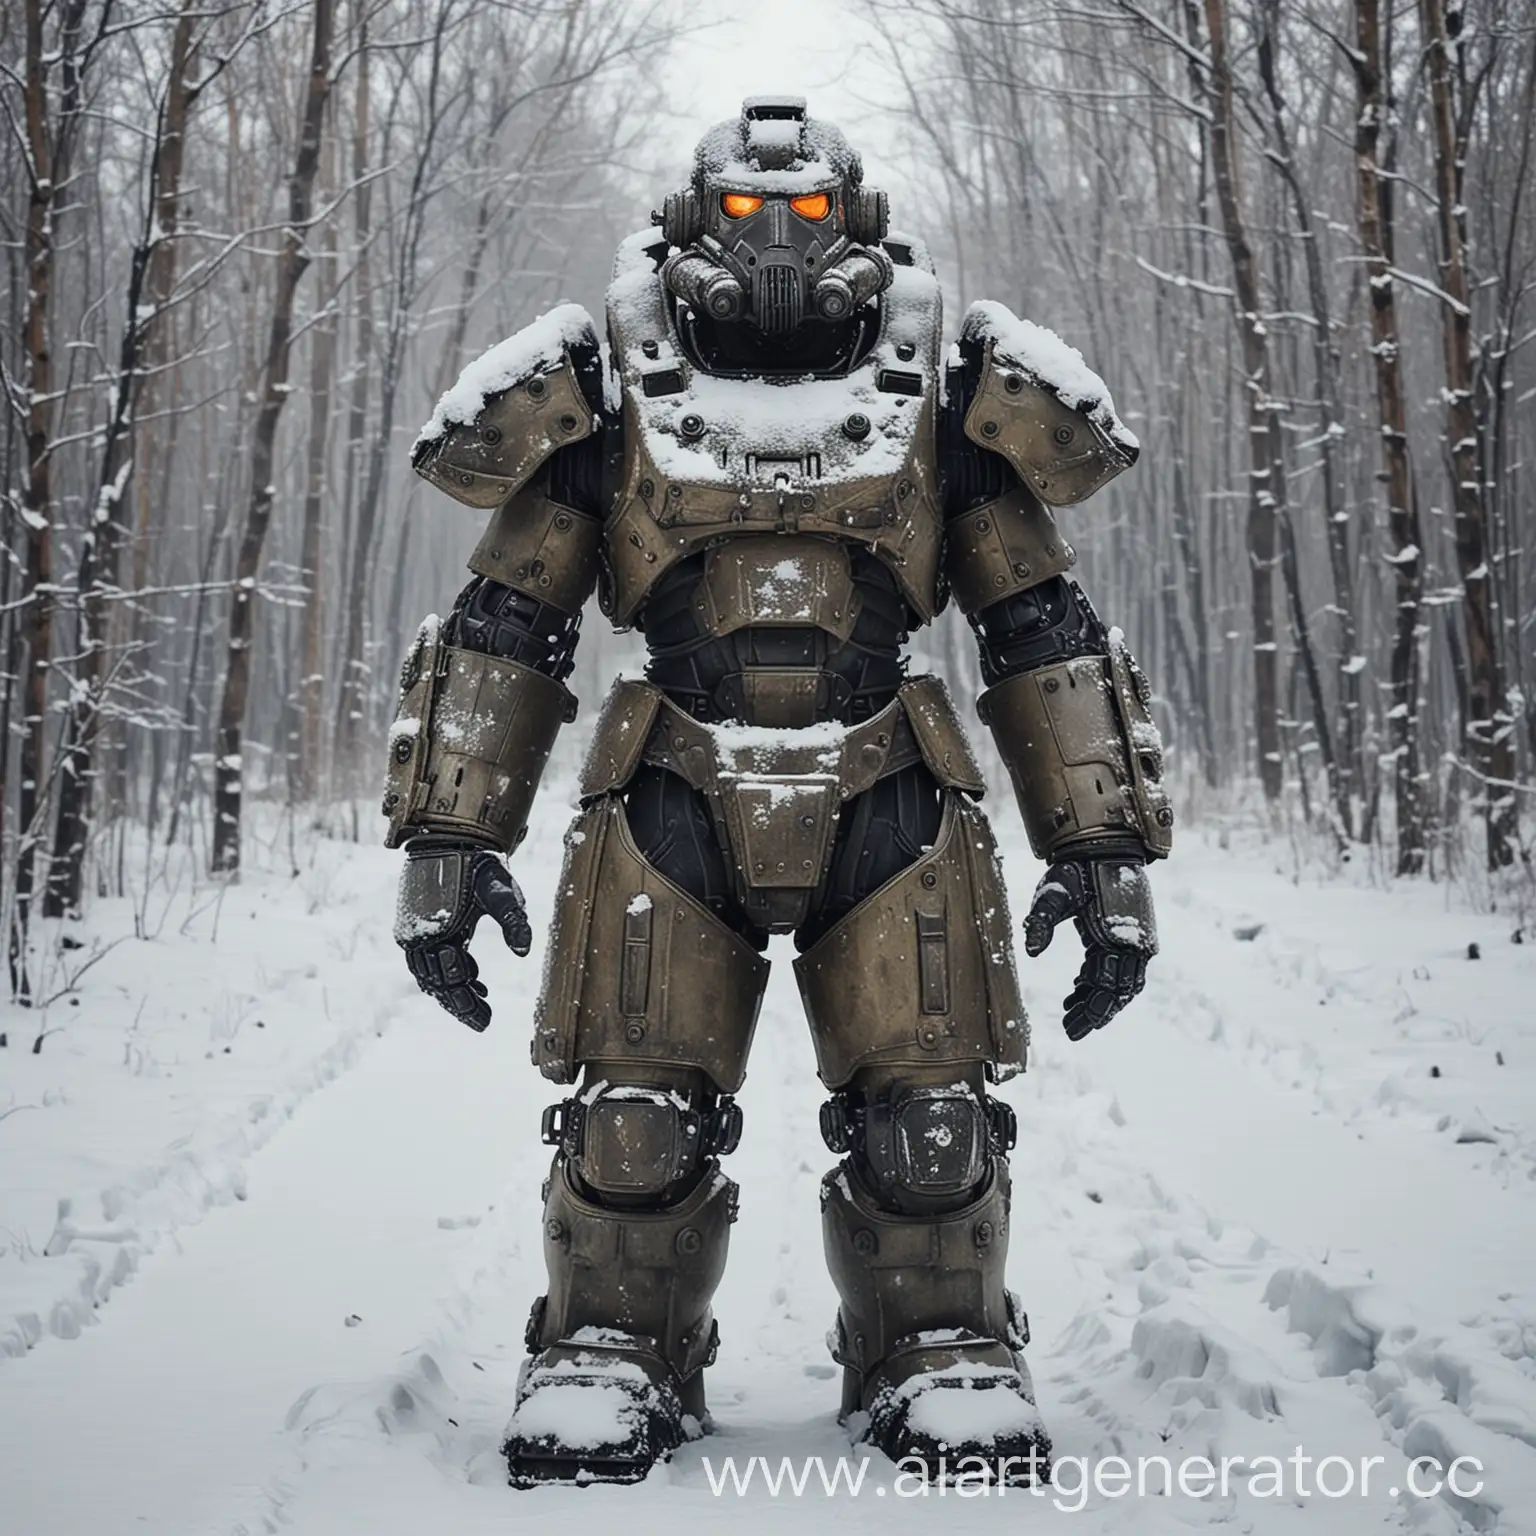 Russian power armor in winter